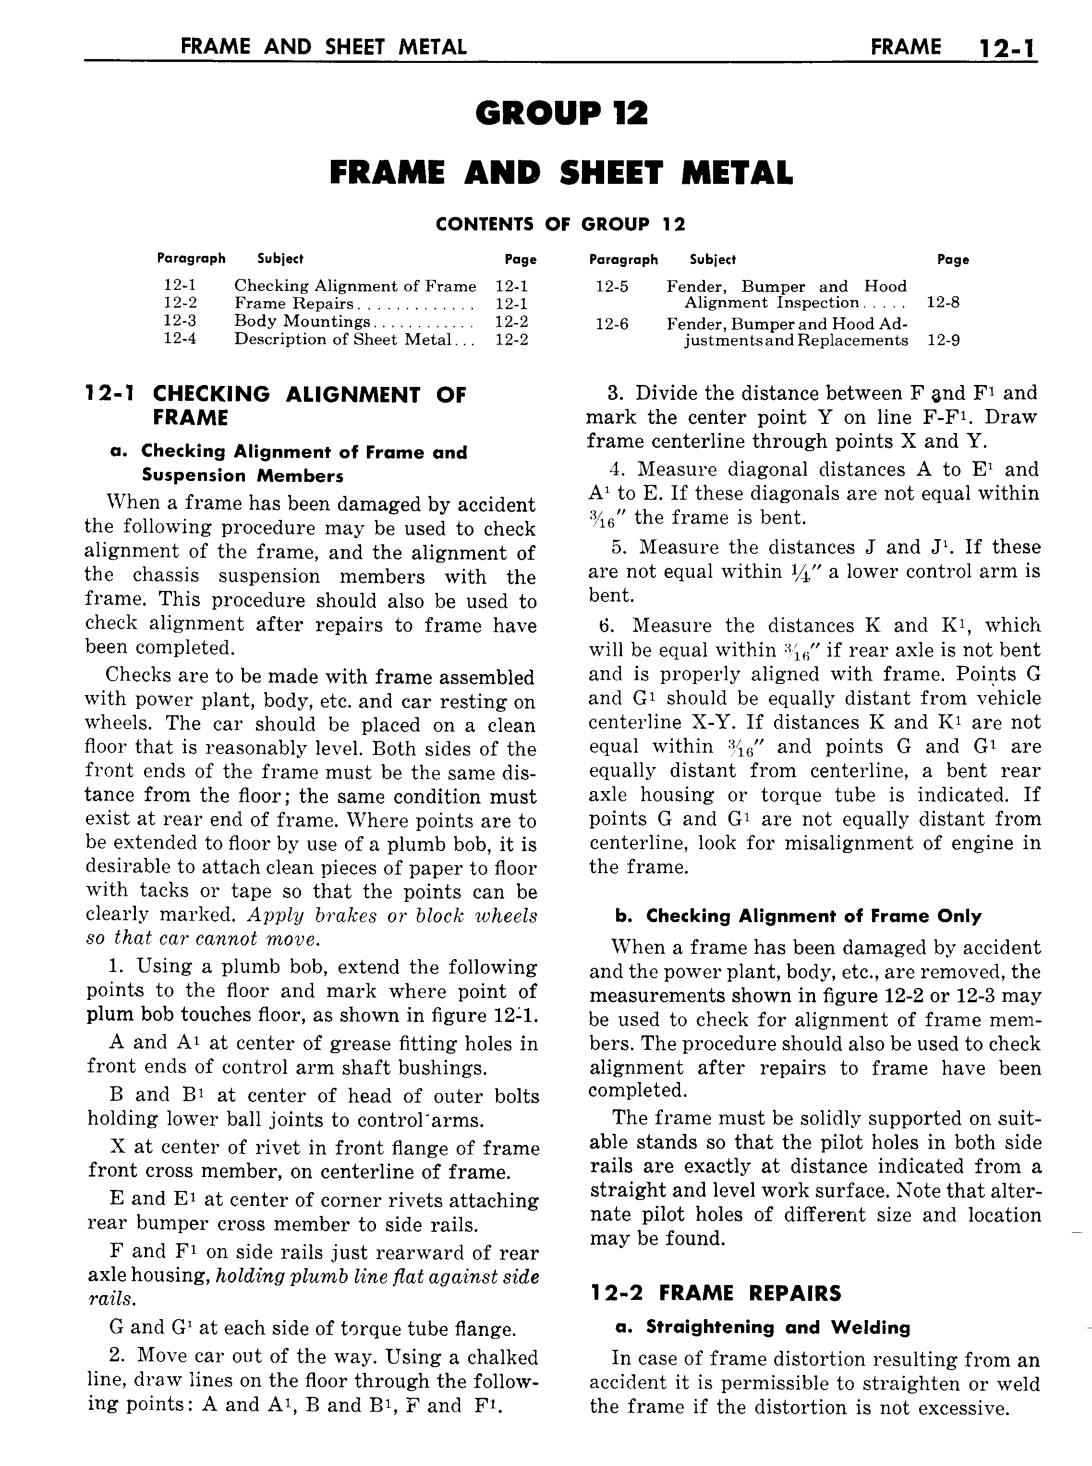 n_13 1957 Buick Shop Manual - Frame & Sheet Metal-001-001.jpg